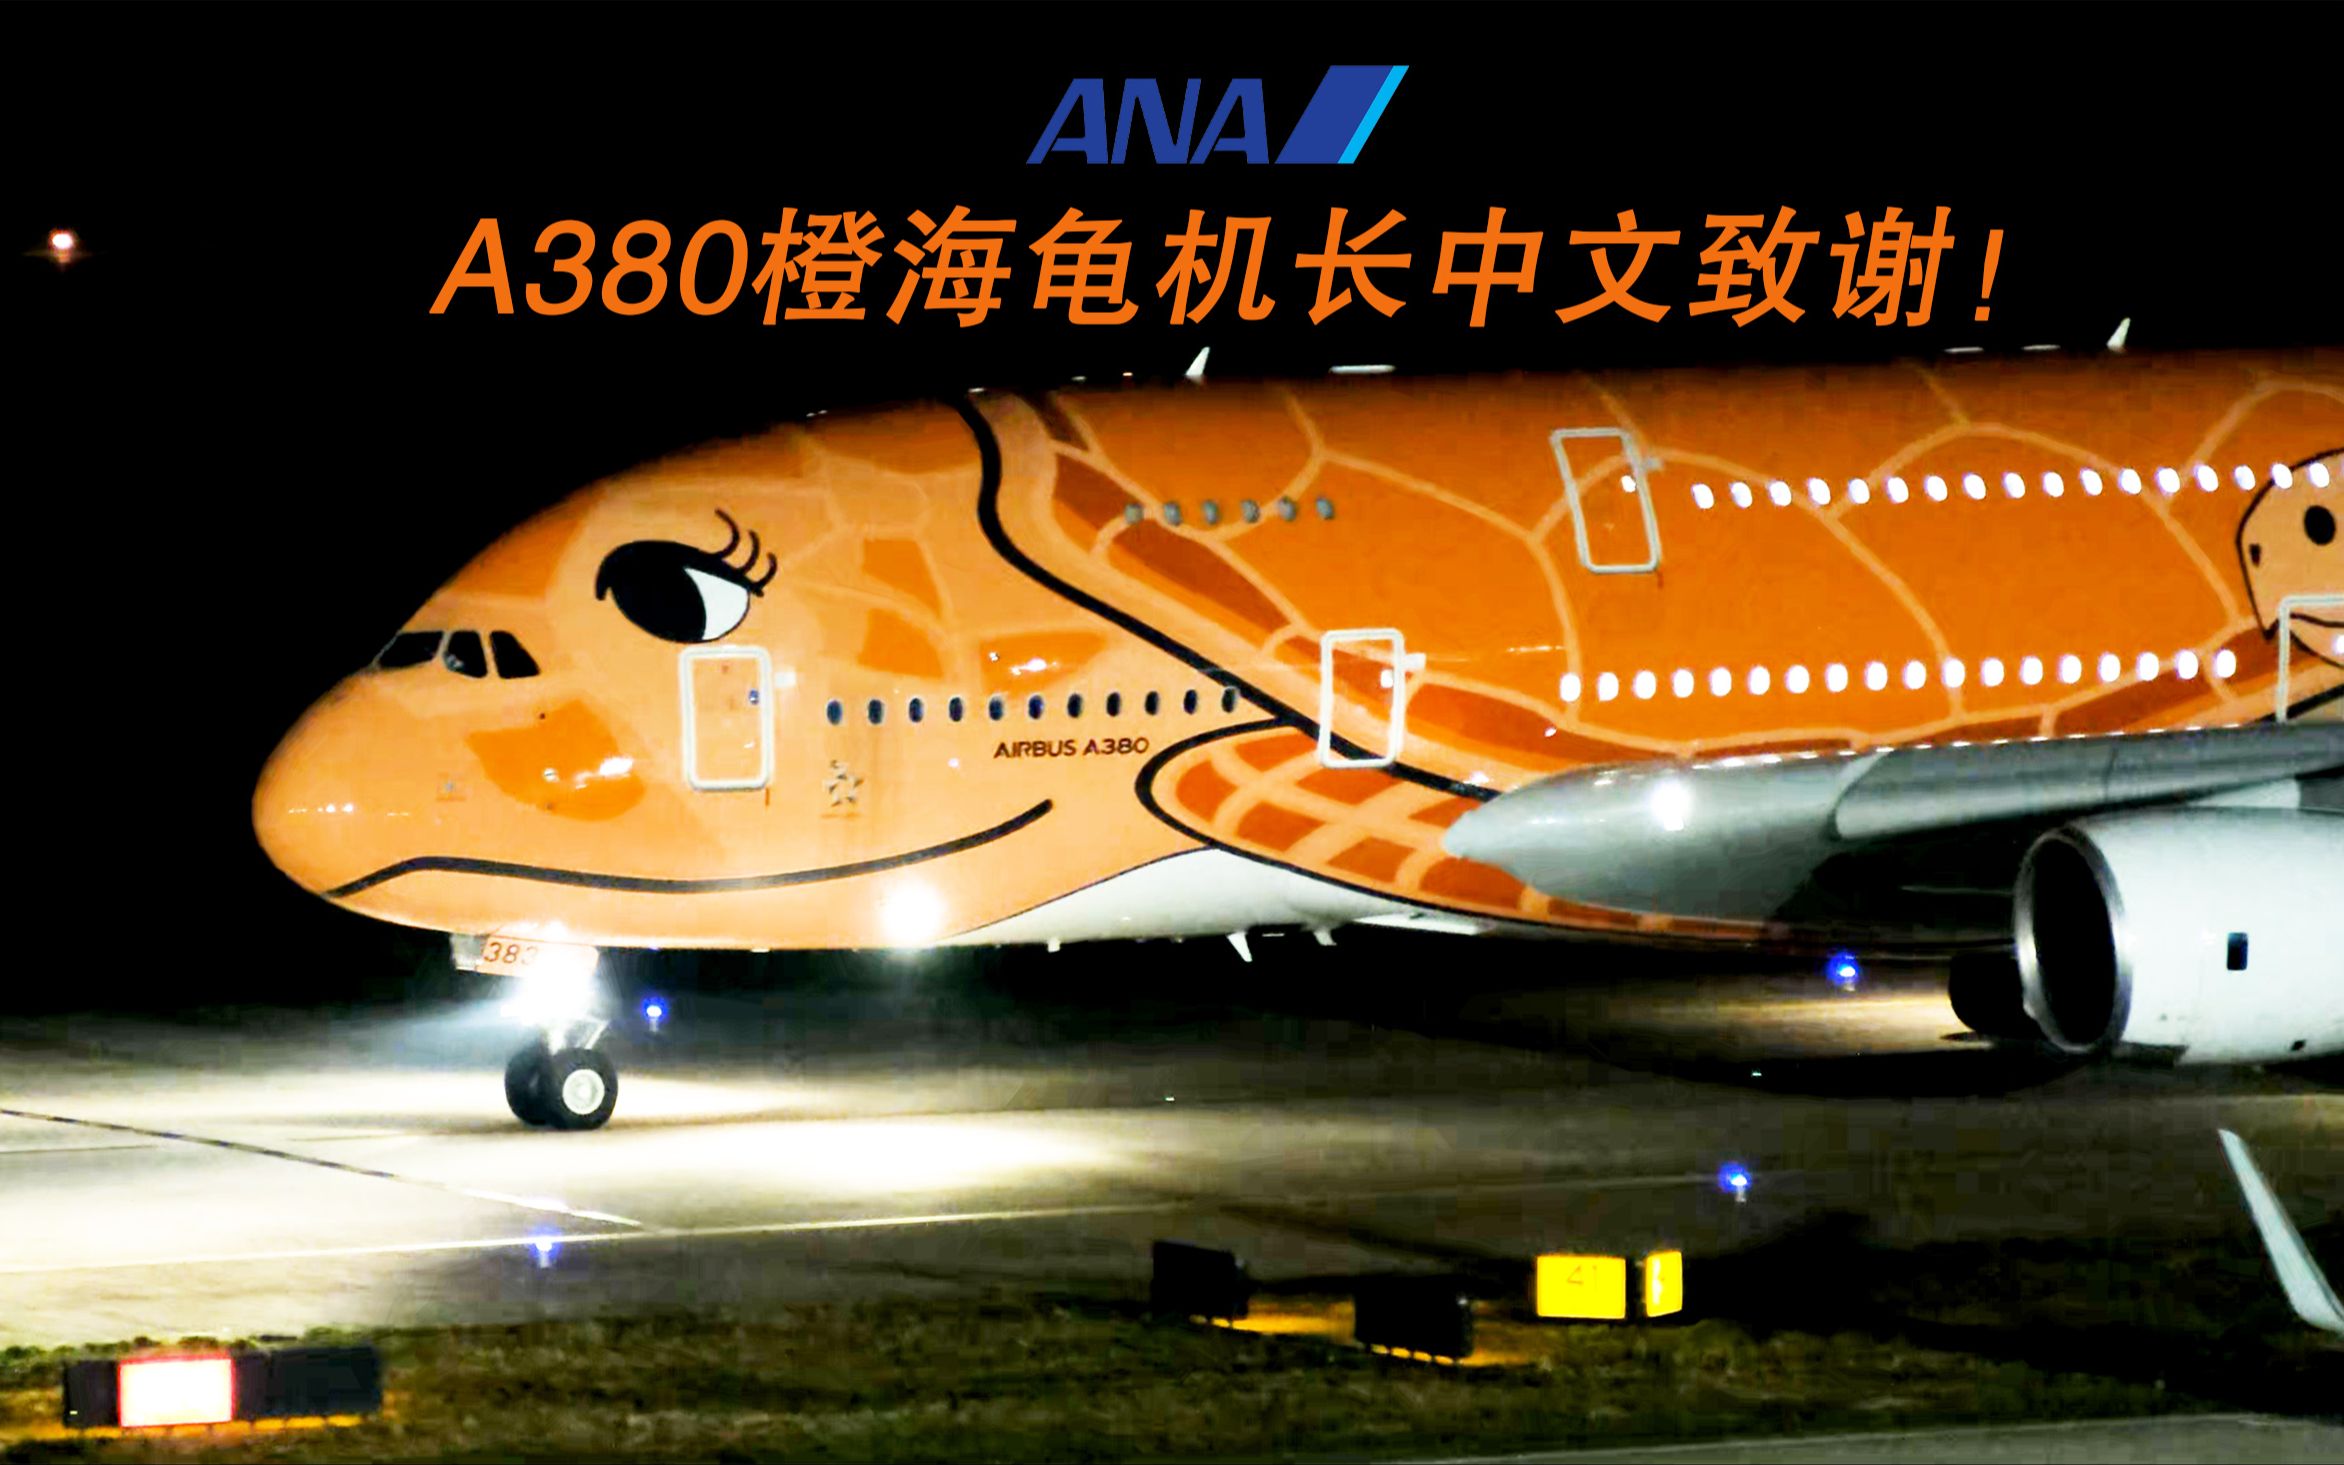 全日空A380橙海龟机长中文致谢！！厦门高崎国际机场